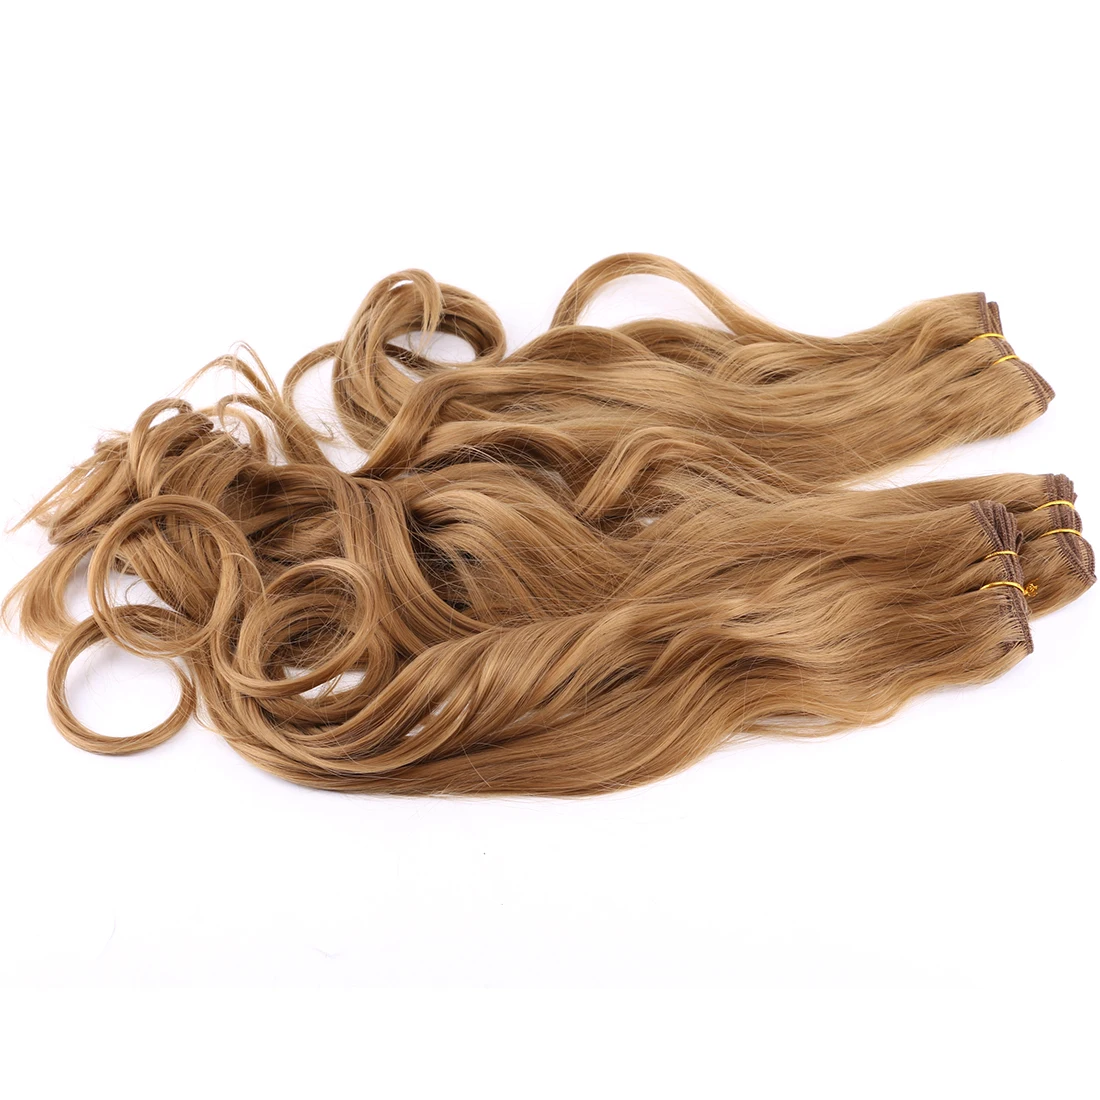 2 шт./партия цвет золотой густые вьющиеся волосы пучок термостойкая завивка искусственных волос расширение для женщин